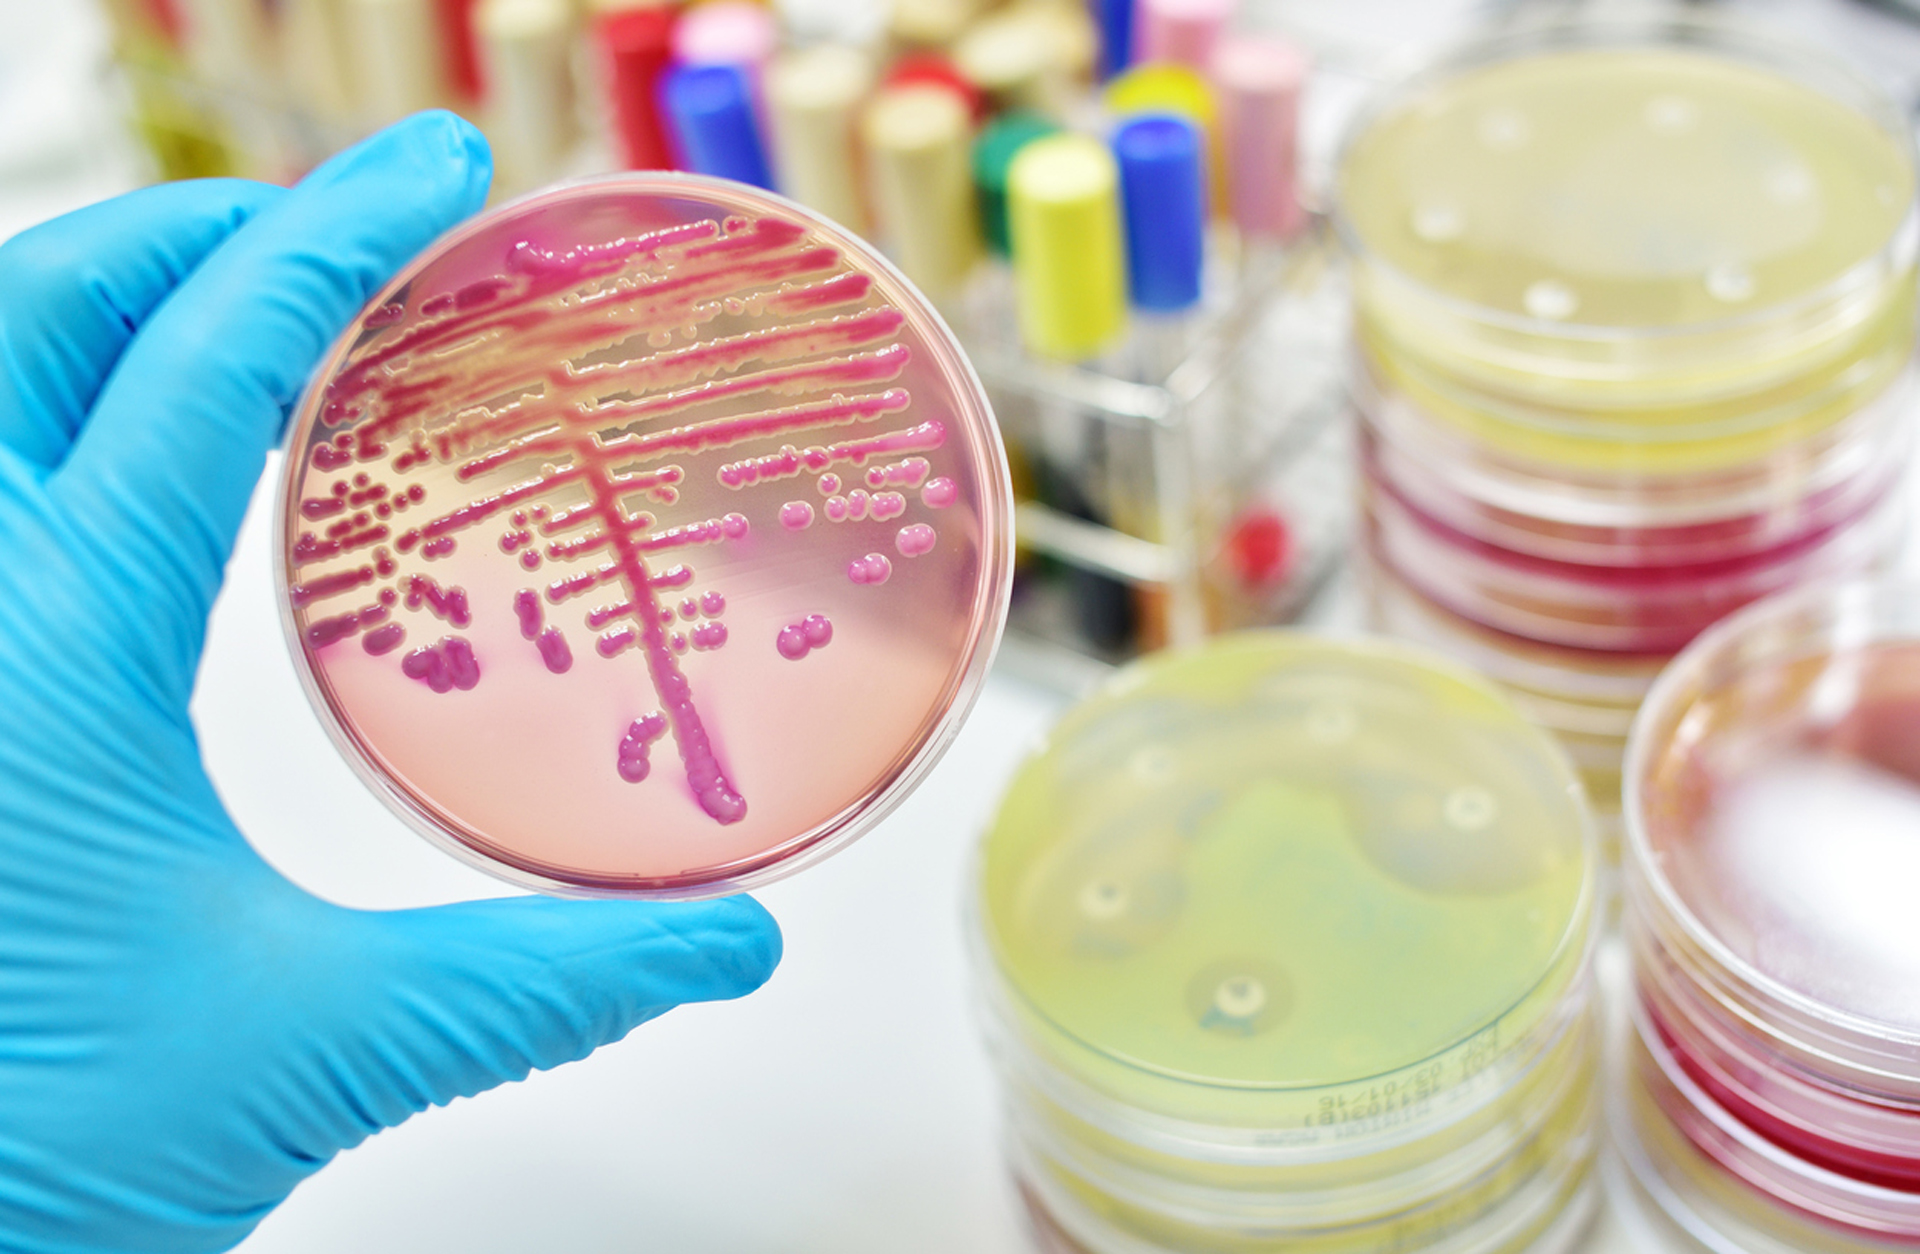 Con los datos actuales, los expertos se inclinan por dos hipótesis: un agente infeccioso (virus o bacteria) intrahospitalario o un nuevo germen (iStock)